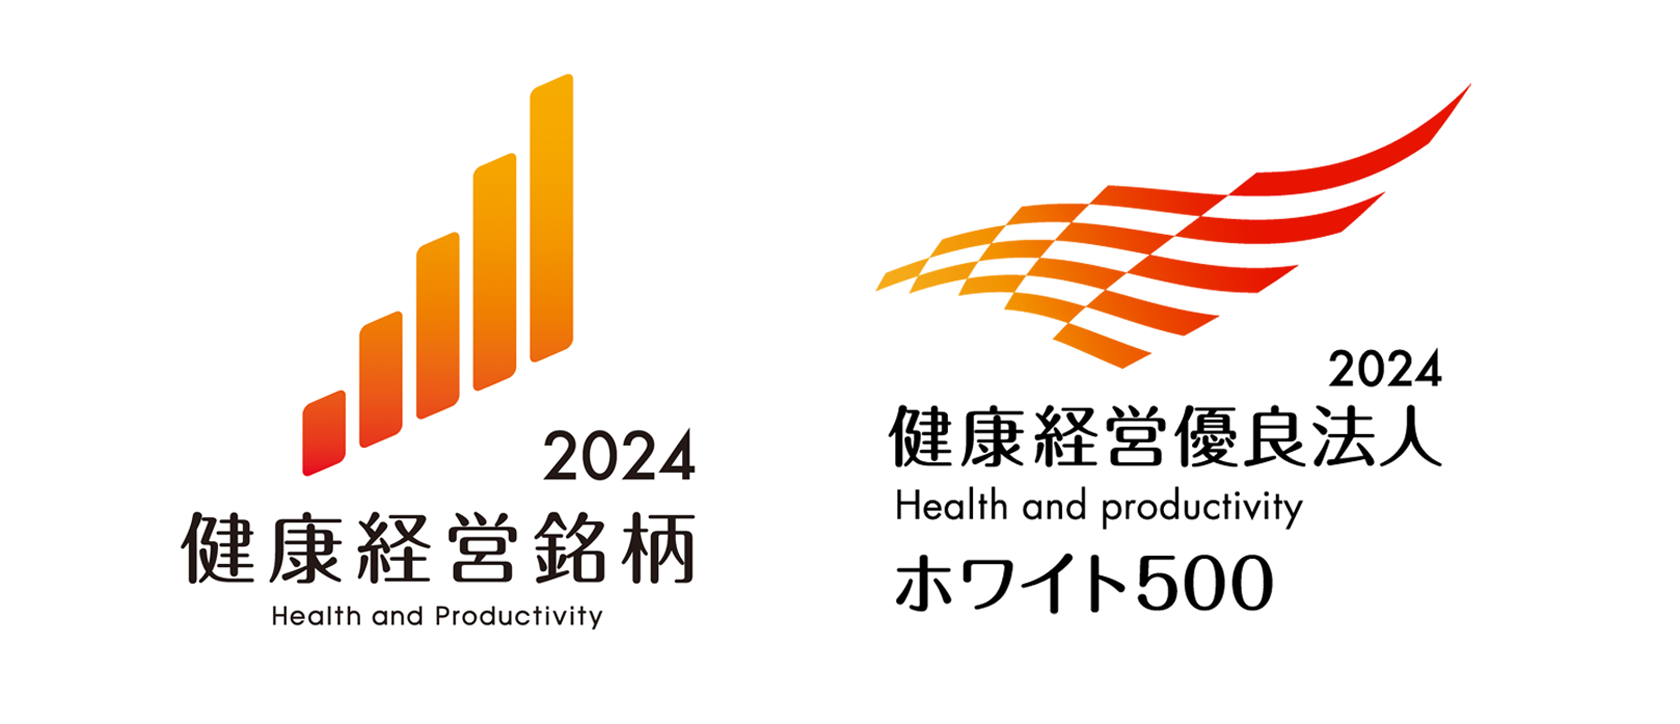 Logo image of Health &amp; Productivity Stock 2024 and Health &amp; Productivity Management Outstanding Organization 2024 (White 500)